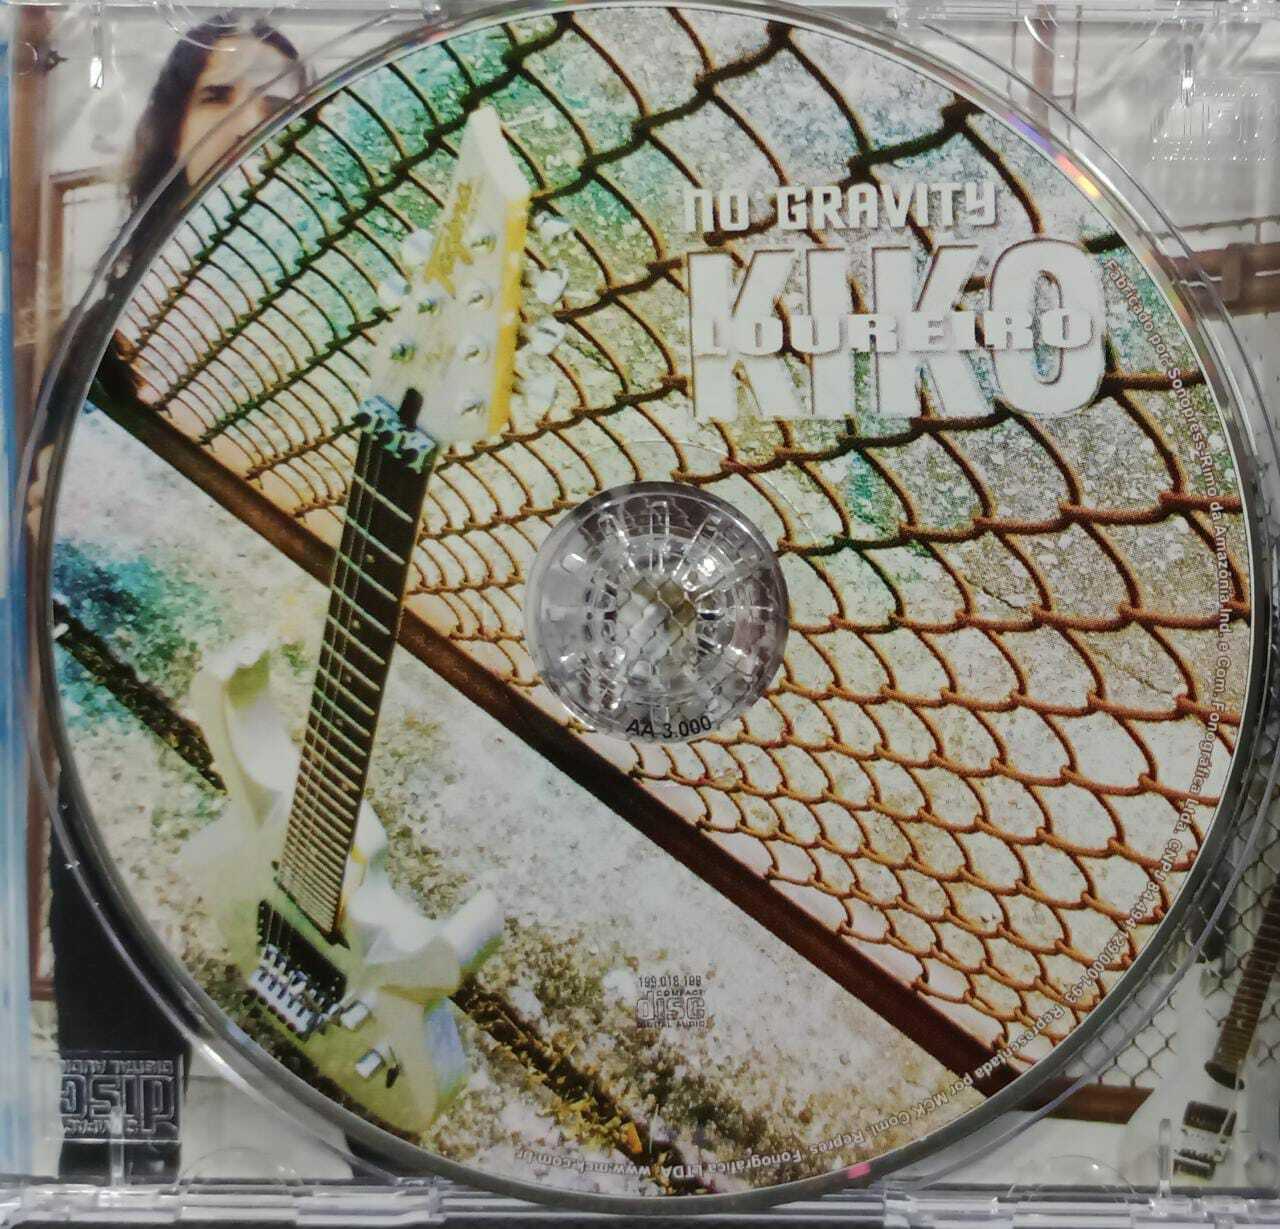 CD - Kiko Loureiro - no Gravity (Autogfrafado)